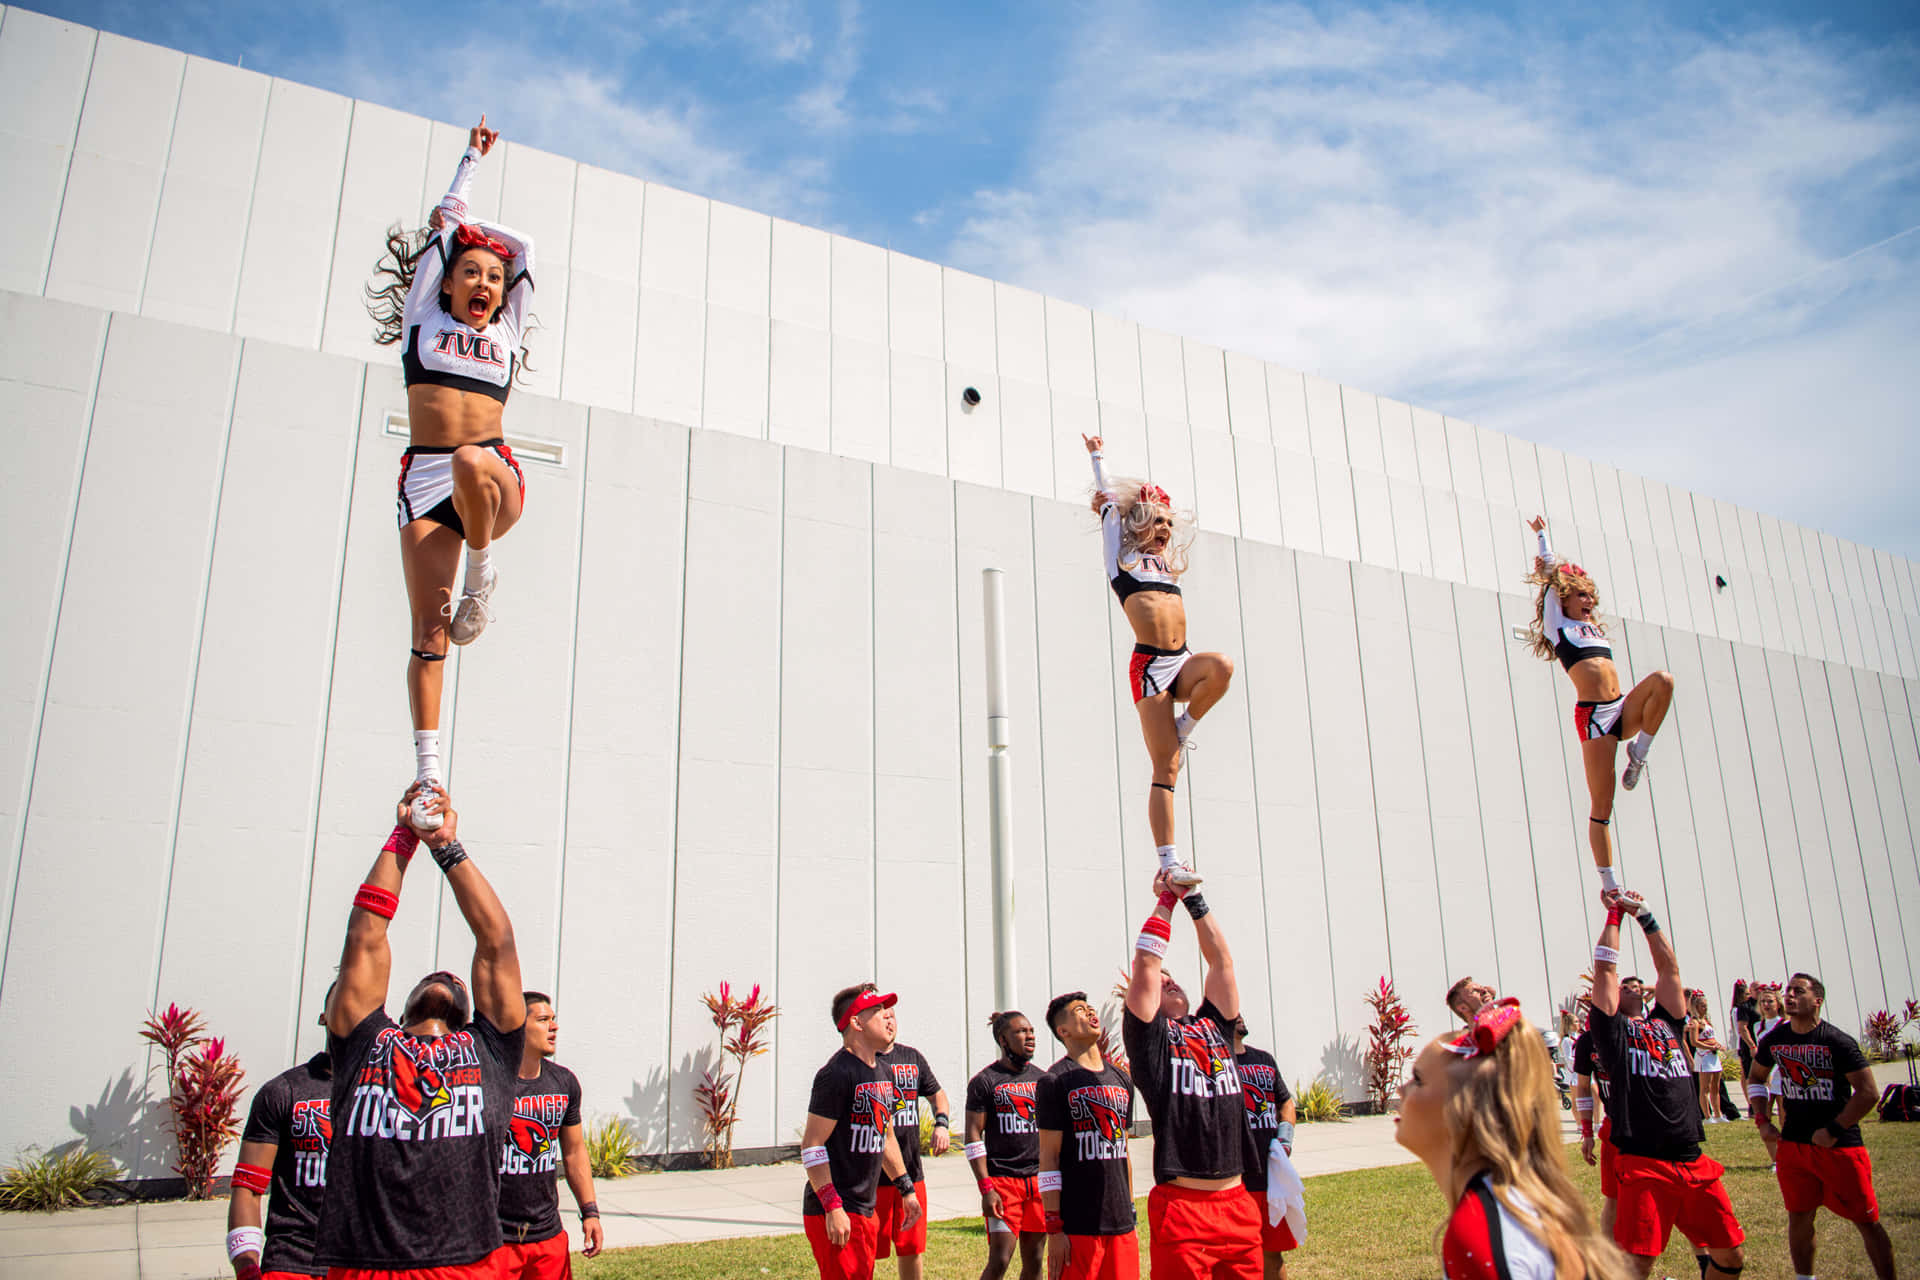 Squadradi Cheerleaders Che Si Unisce Per Una Performance Ad Alta Energia